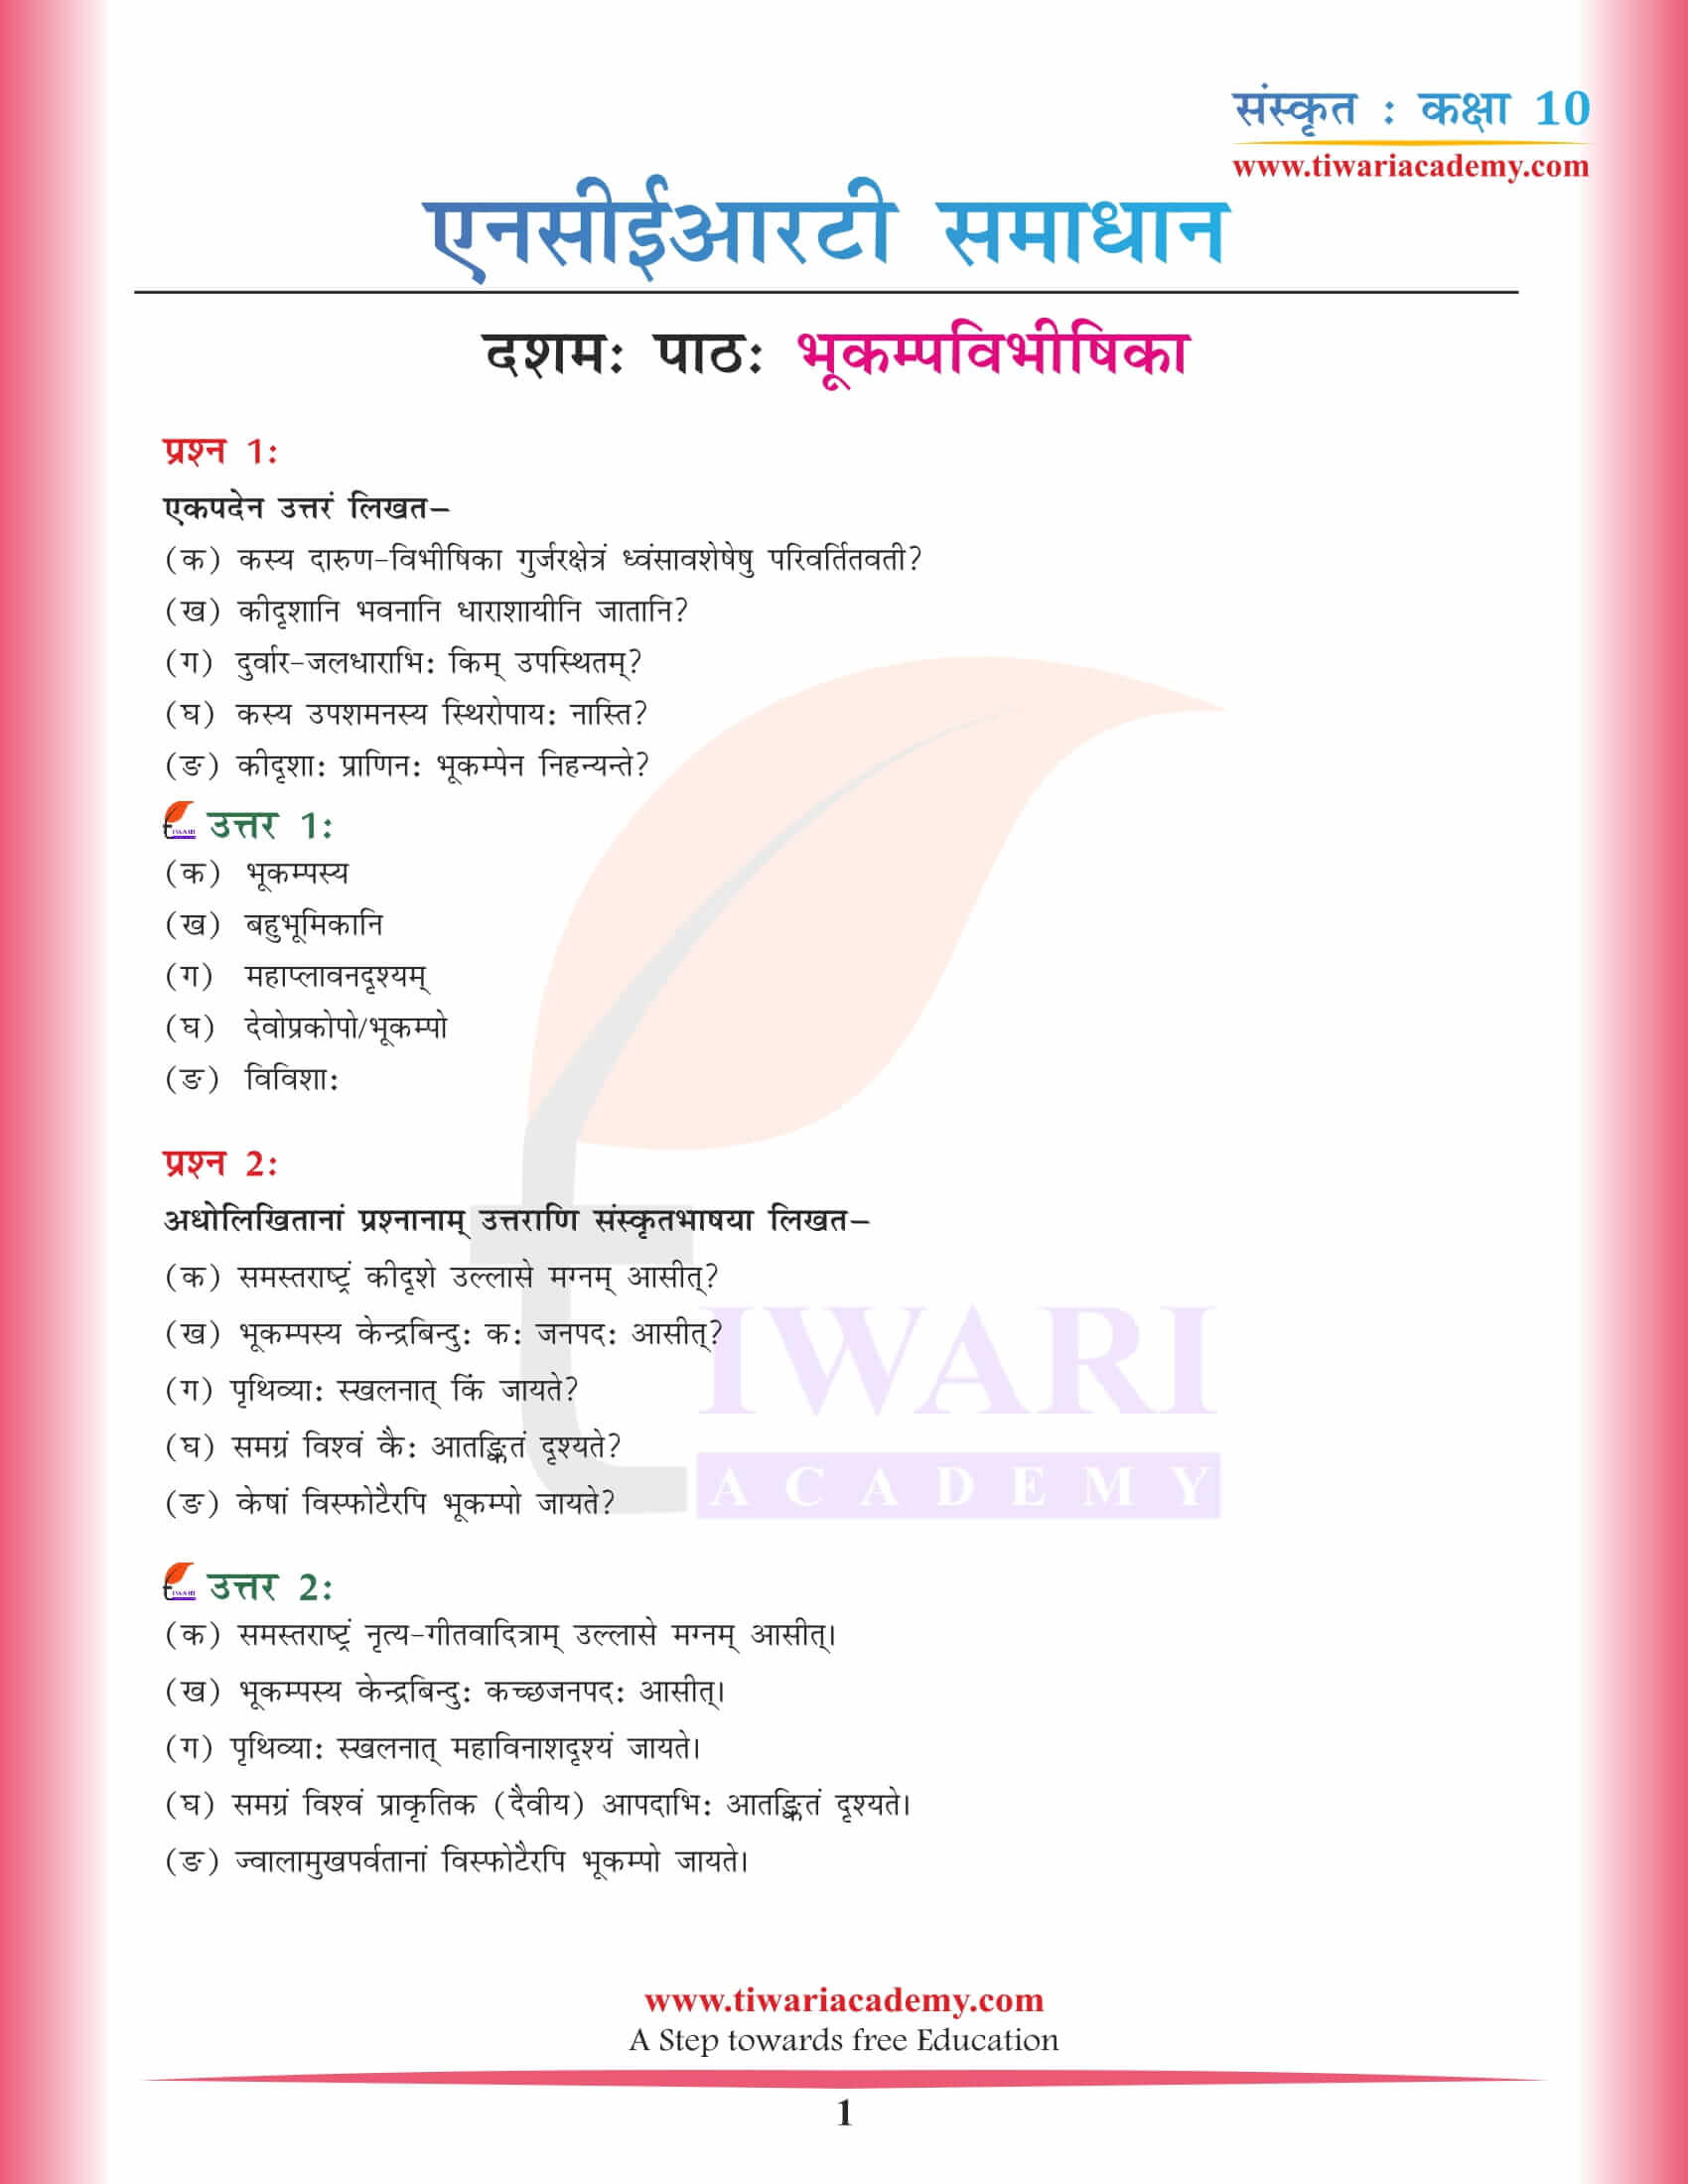 कक्षा 10 संस्कृत अध्याय 10 एनसीईआरटी समाधान